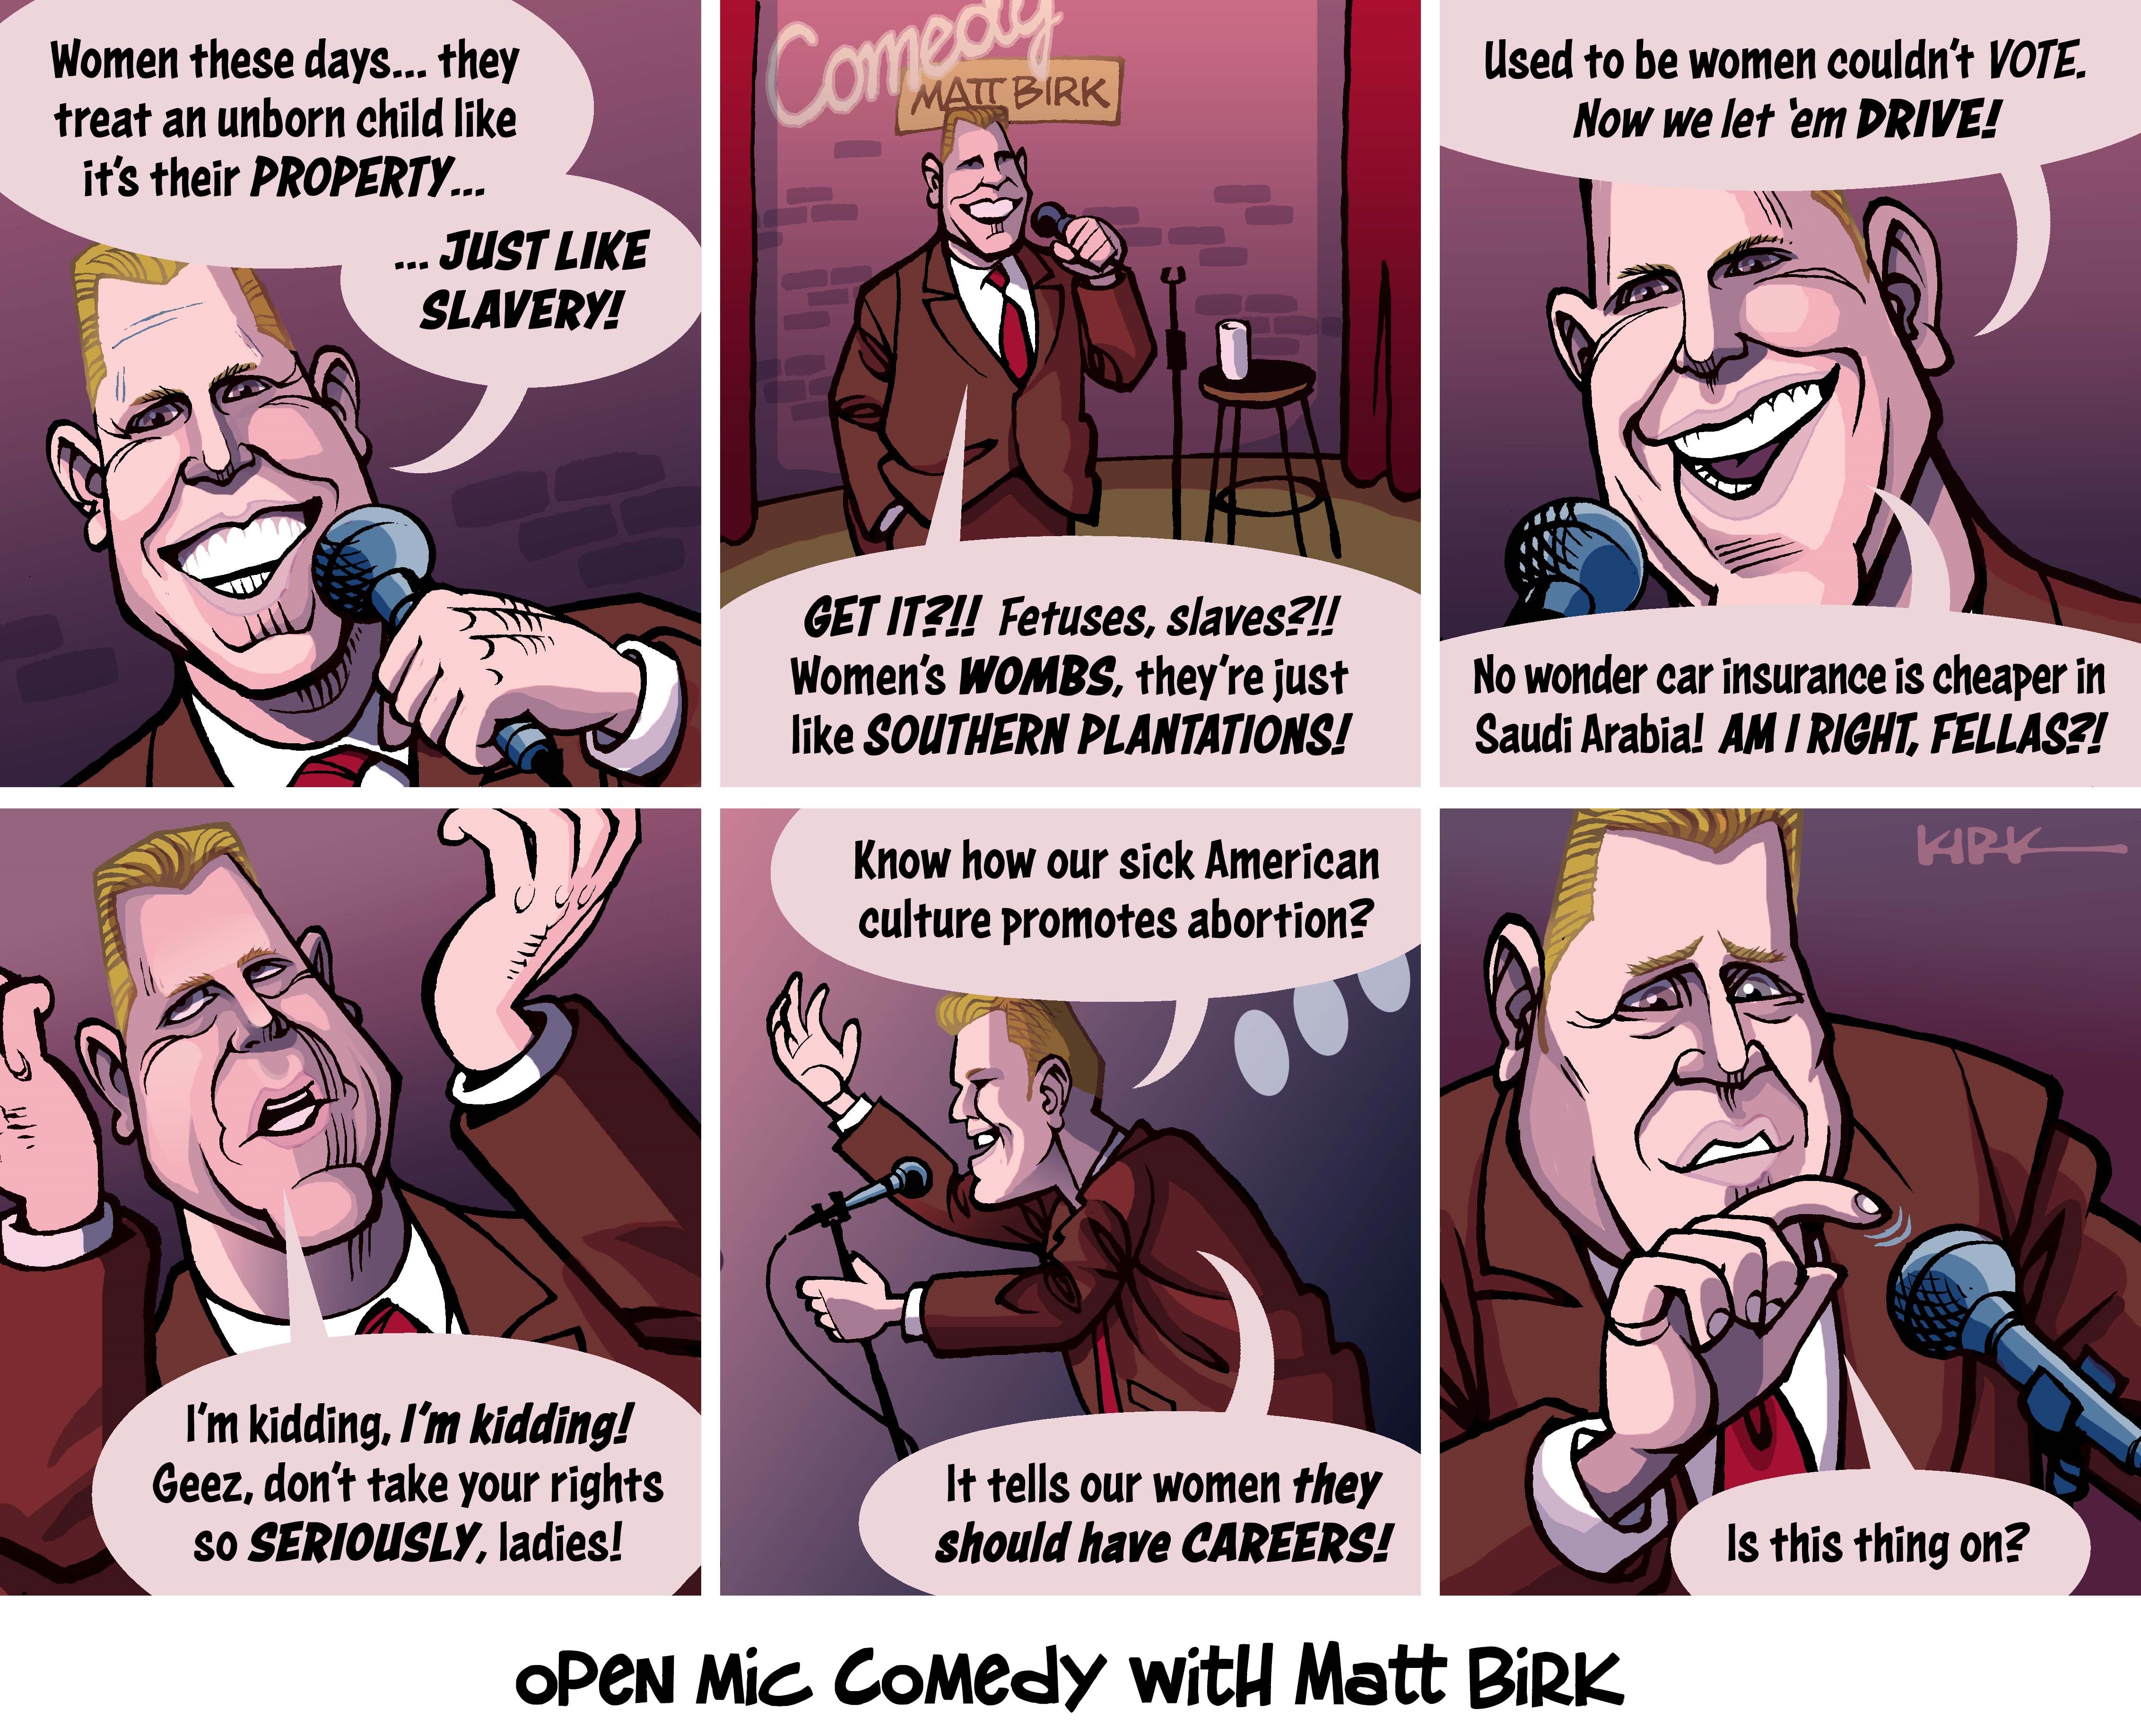 Editorial cartoon: Kirk Anderson on Matt Birk